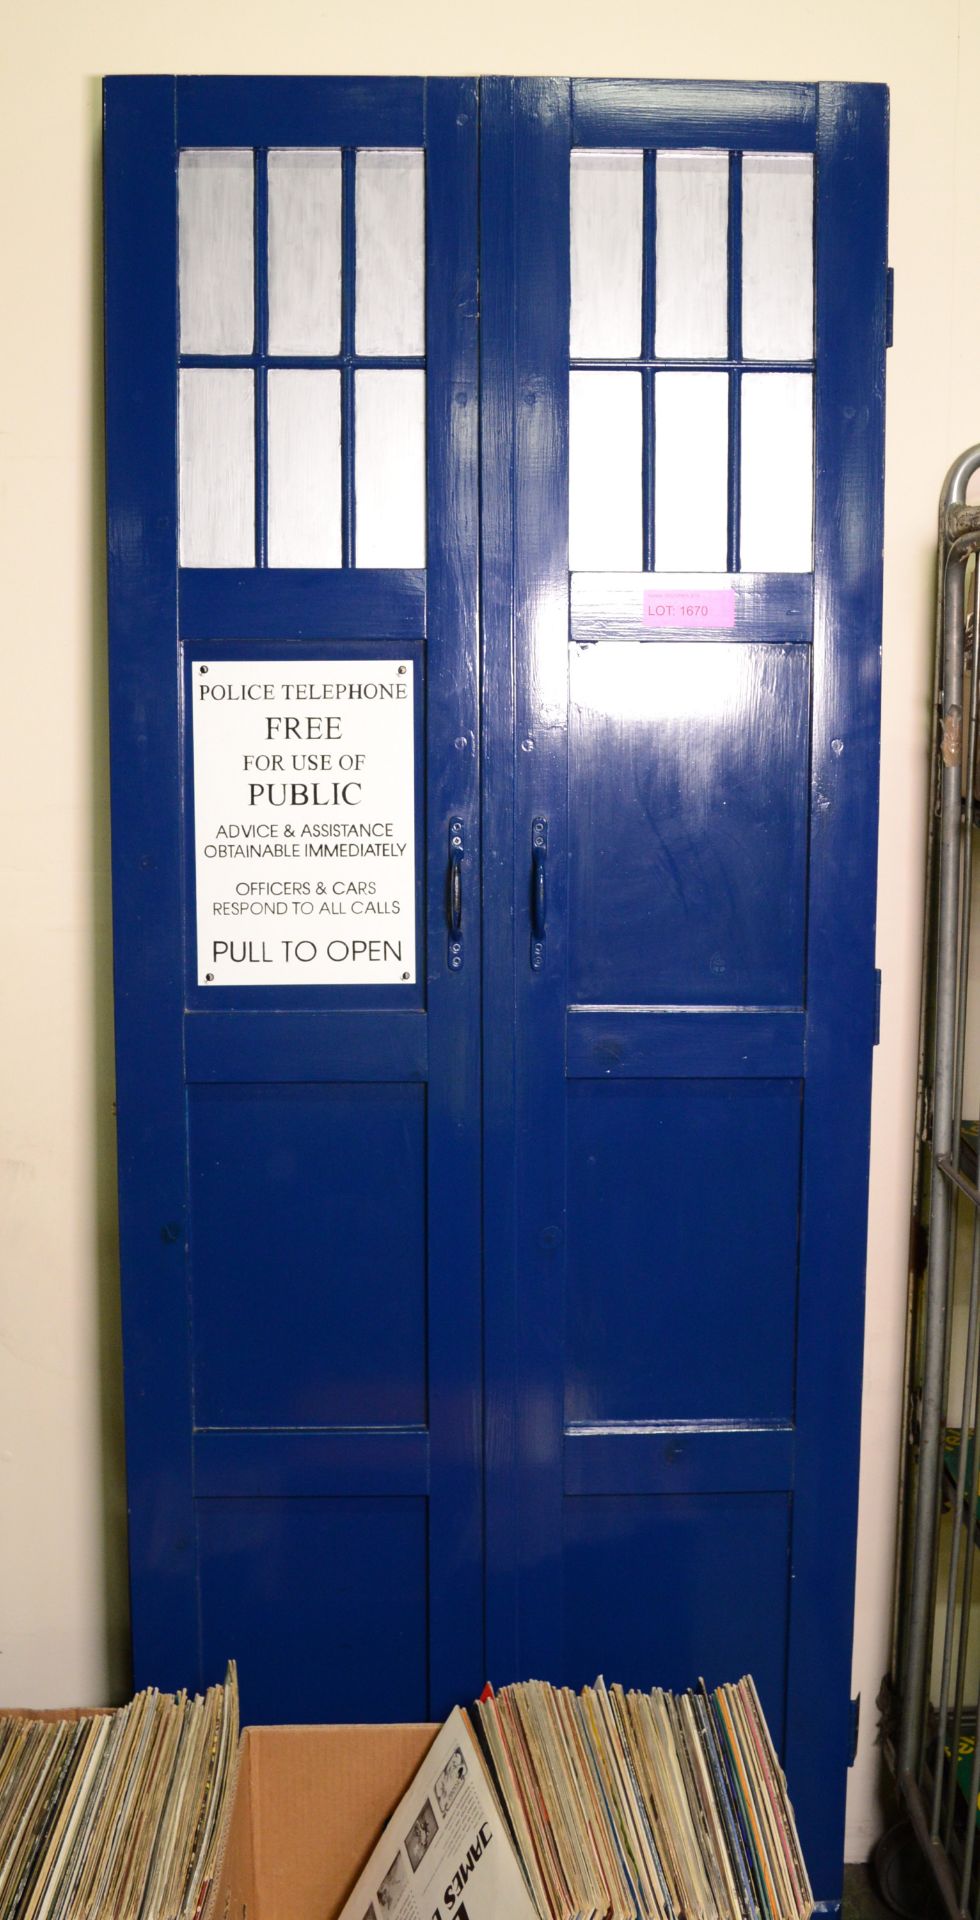 Dr Who TARDIS Door - To replace household internal door 6'6" x 2'x6".